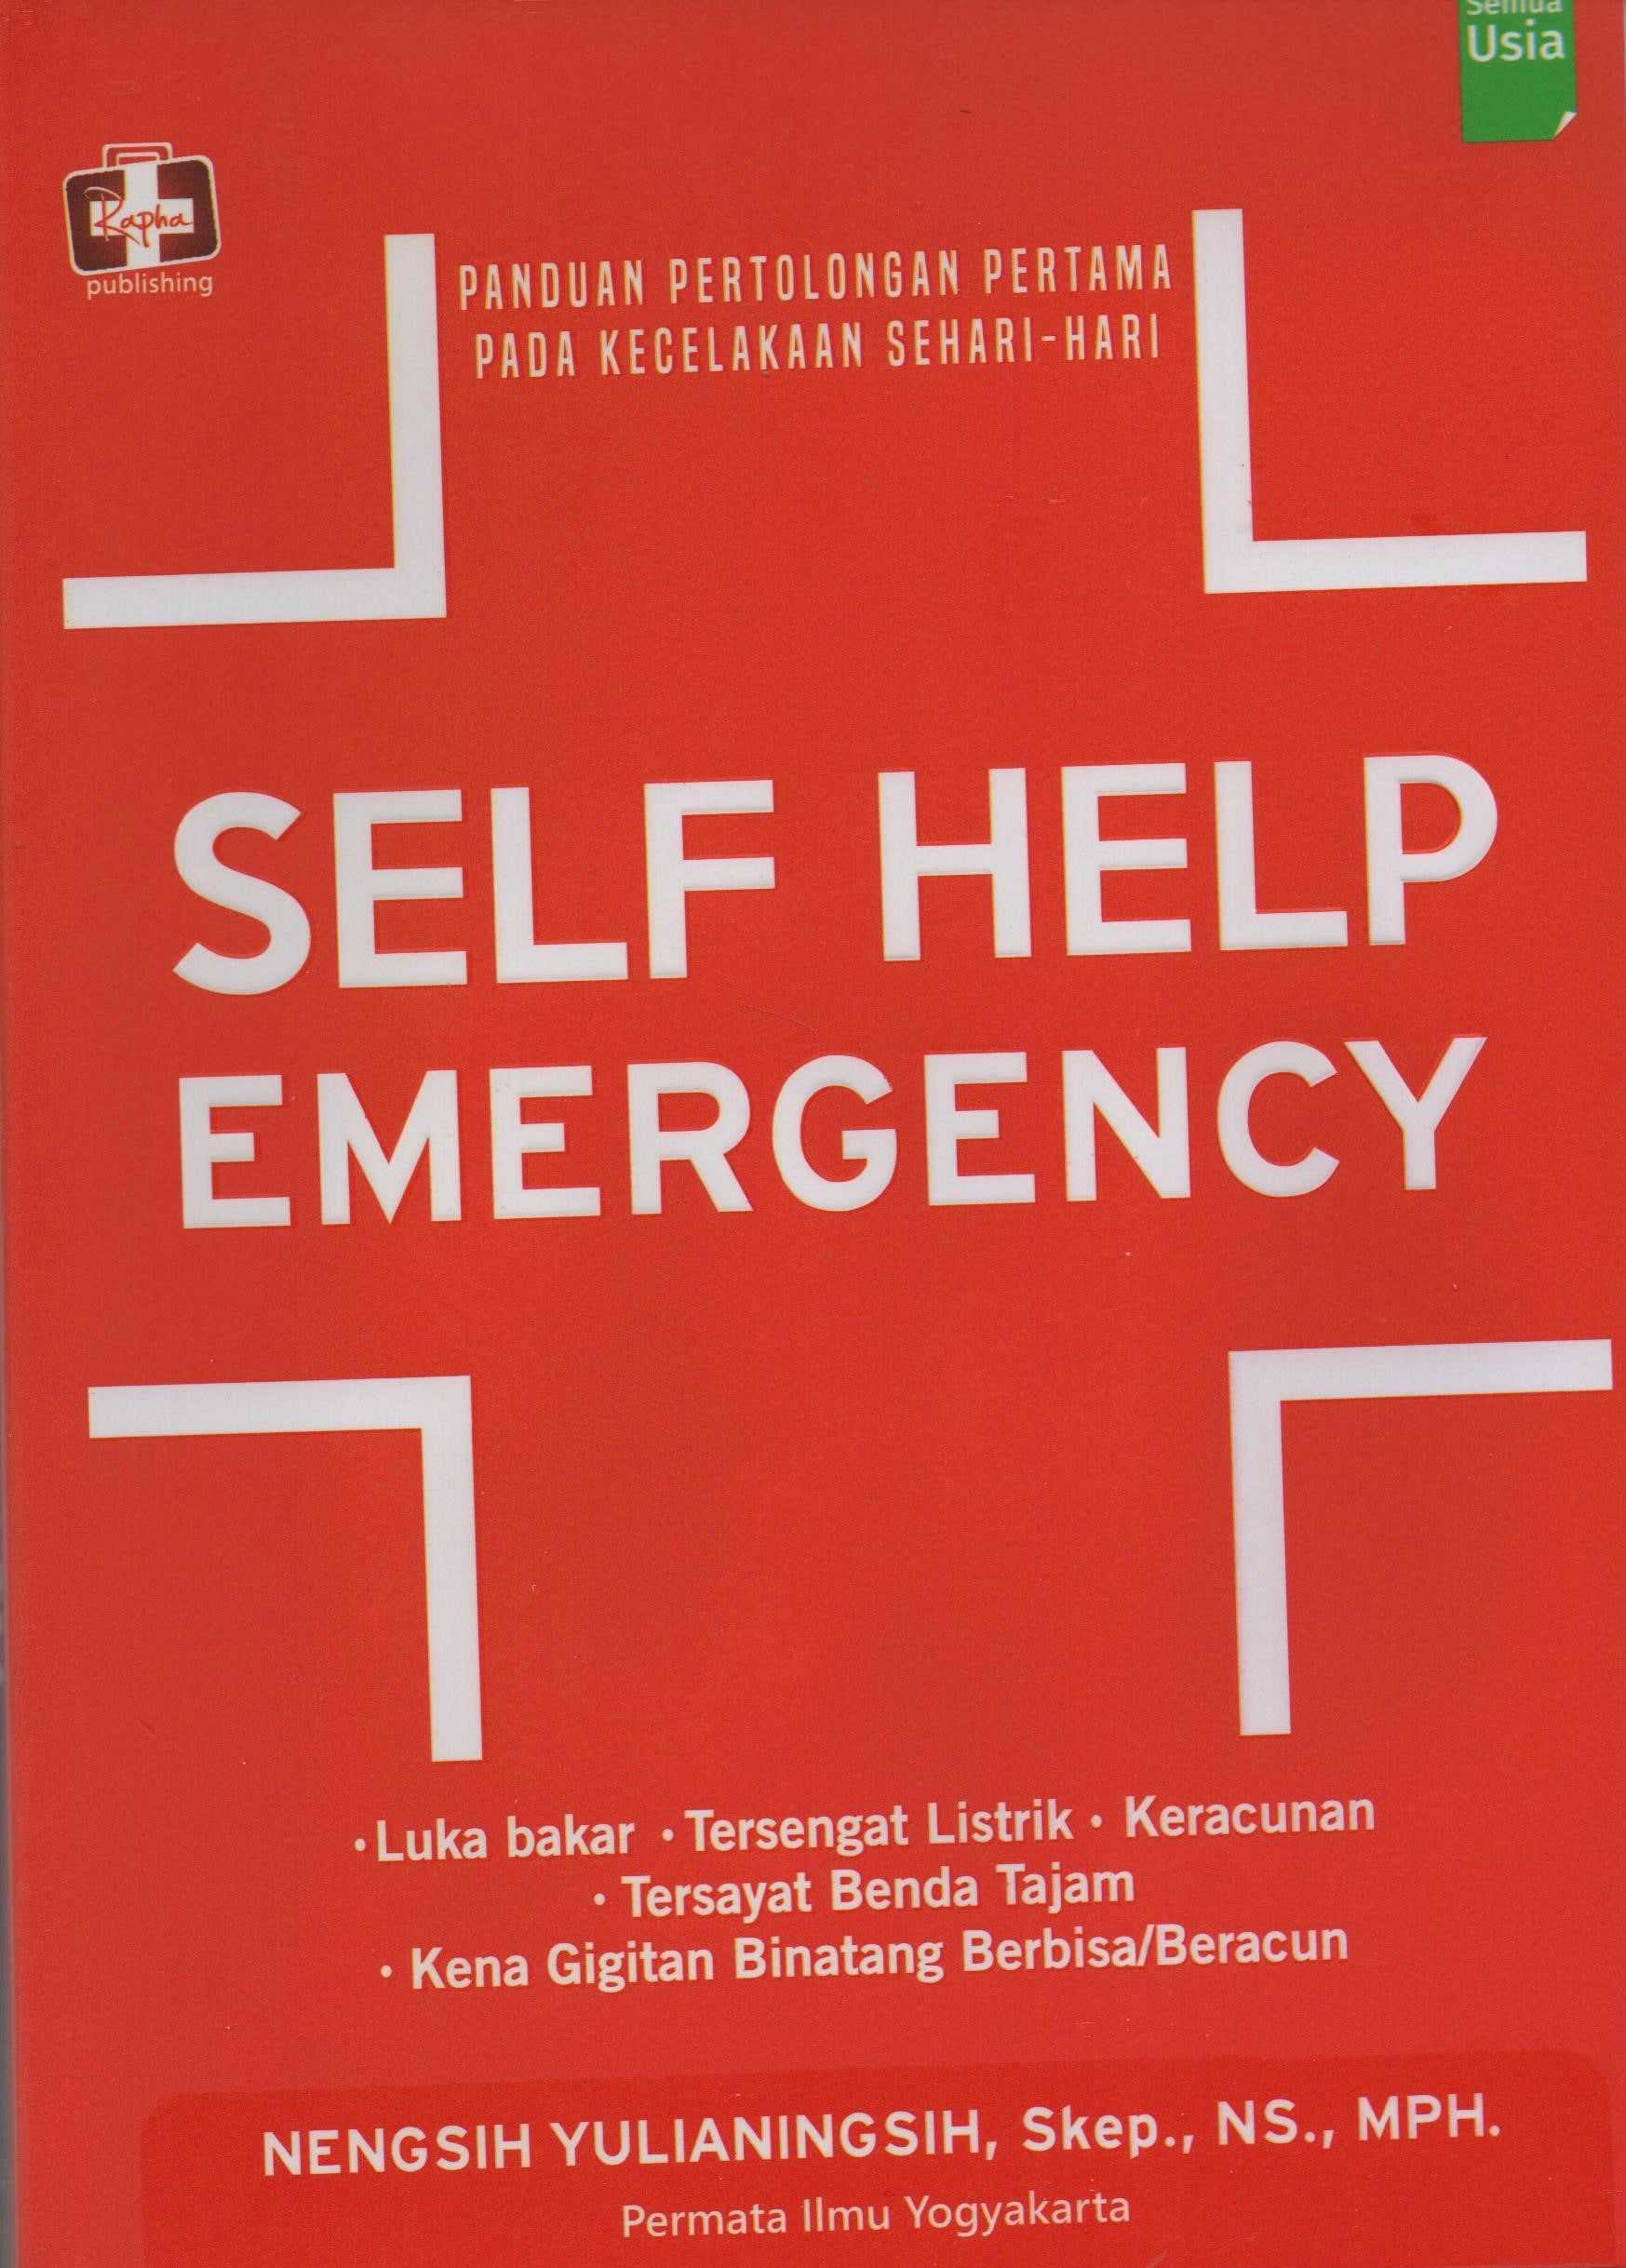 Panduan Pertolongan Pertama Pada Kecelakaan Sehari - Hari : Self Help Emergency ed.1